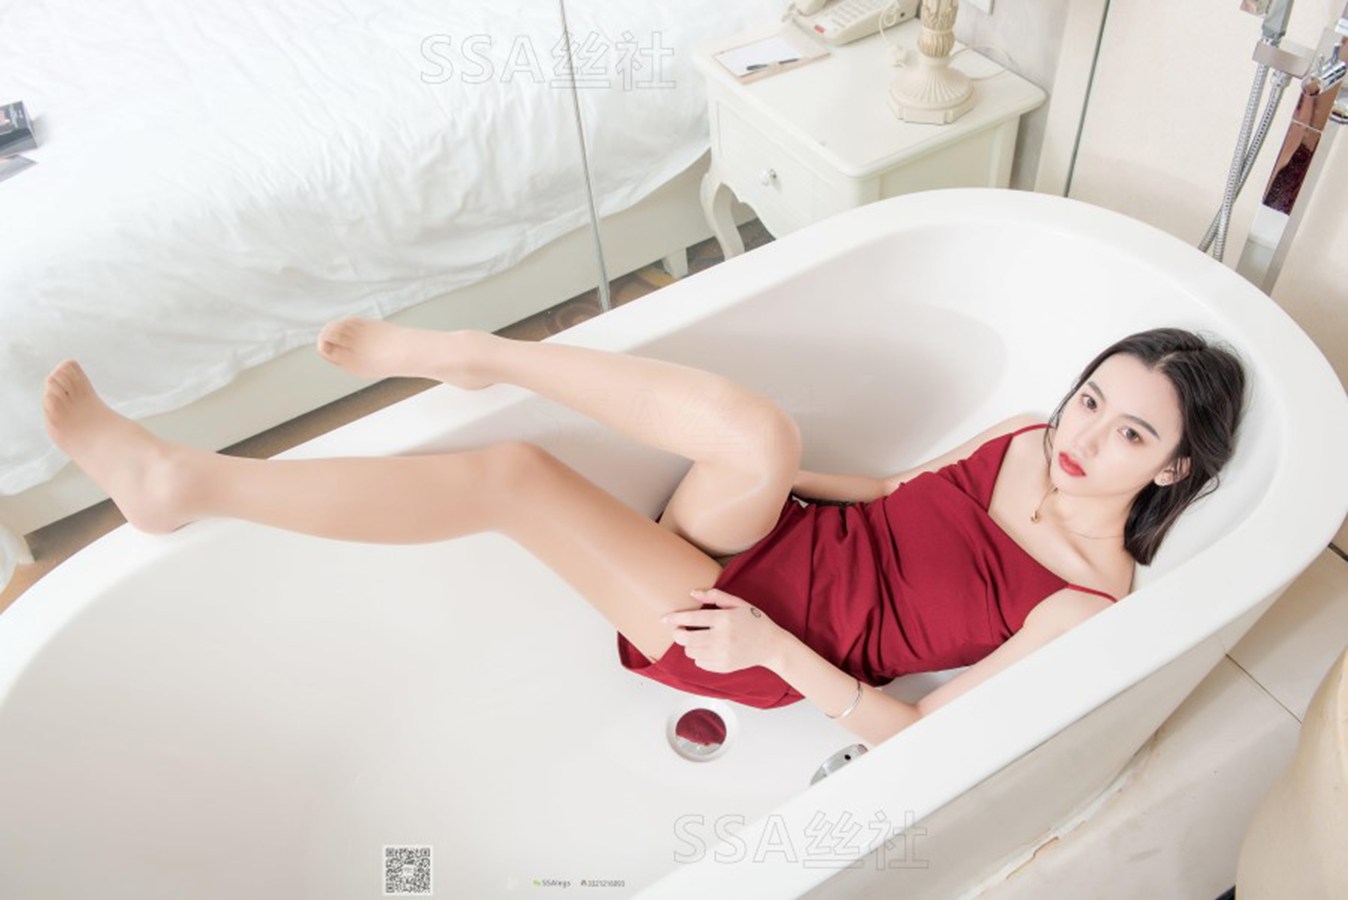 [SSA丝社] NO.080 大大 浴室迷情肉色油亮丝袜写真 在现浏览第10张